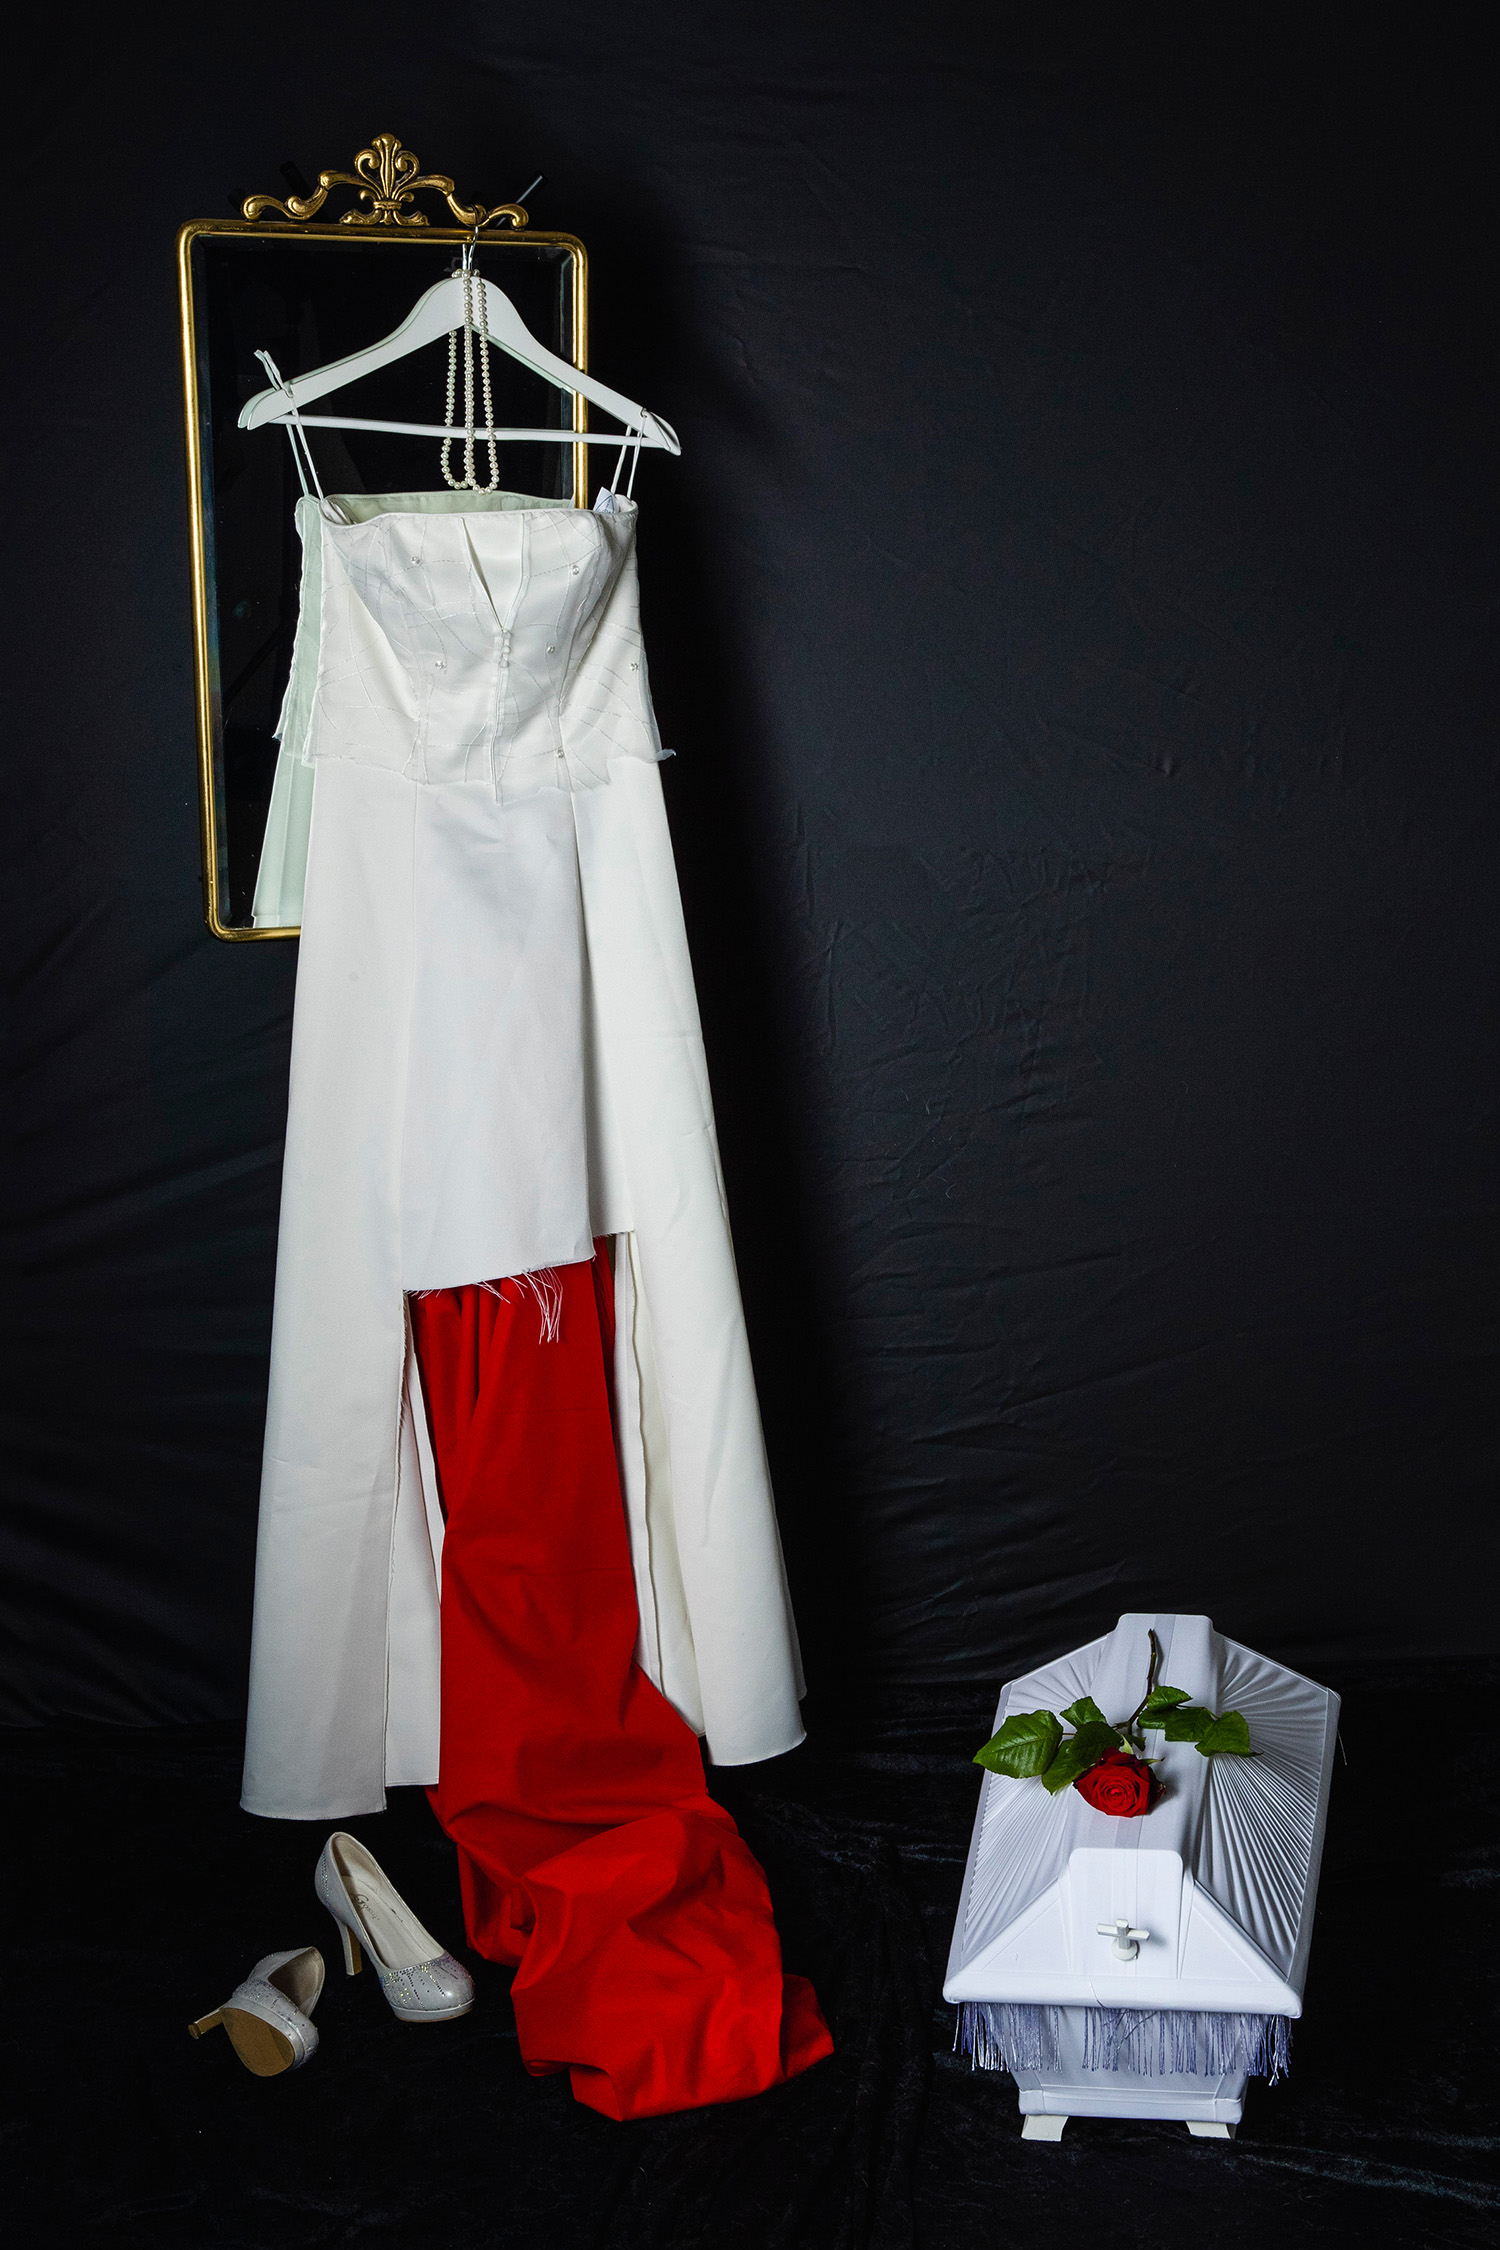 En sönderklippt brudklänning upphängd på en spegel med guldram. På golvet finns en liten kista och ett par vita skor.